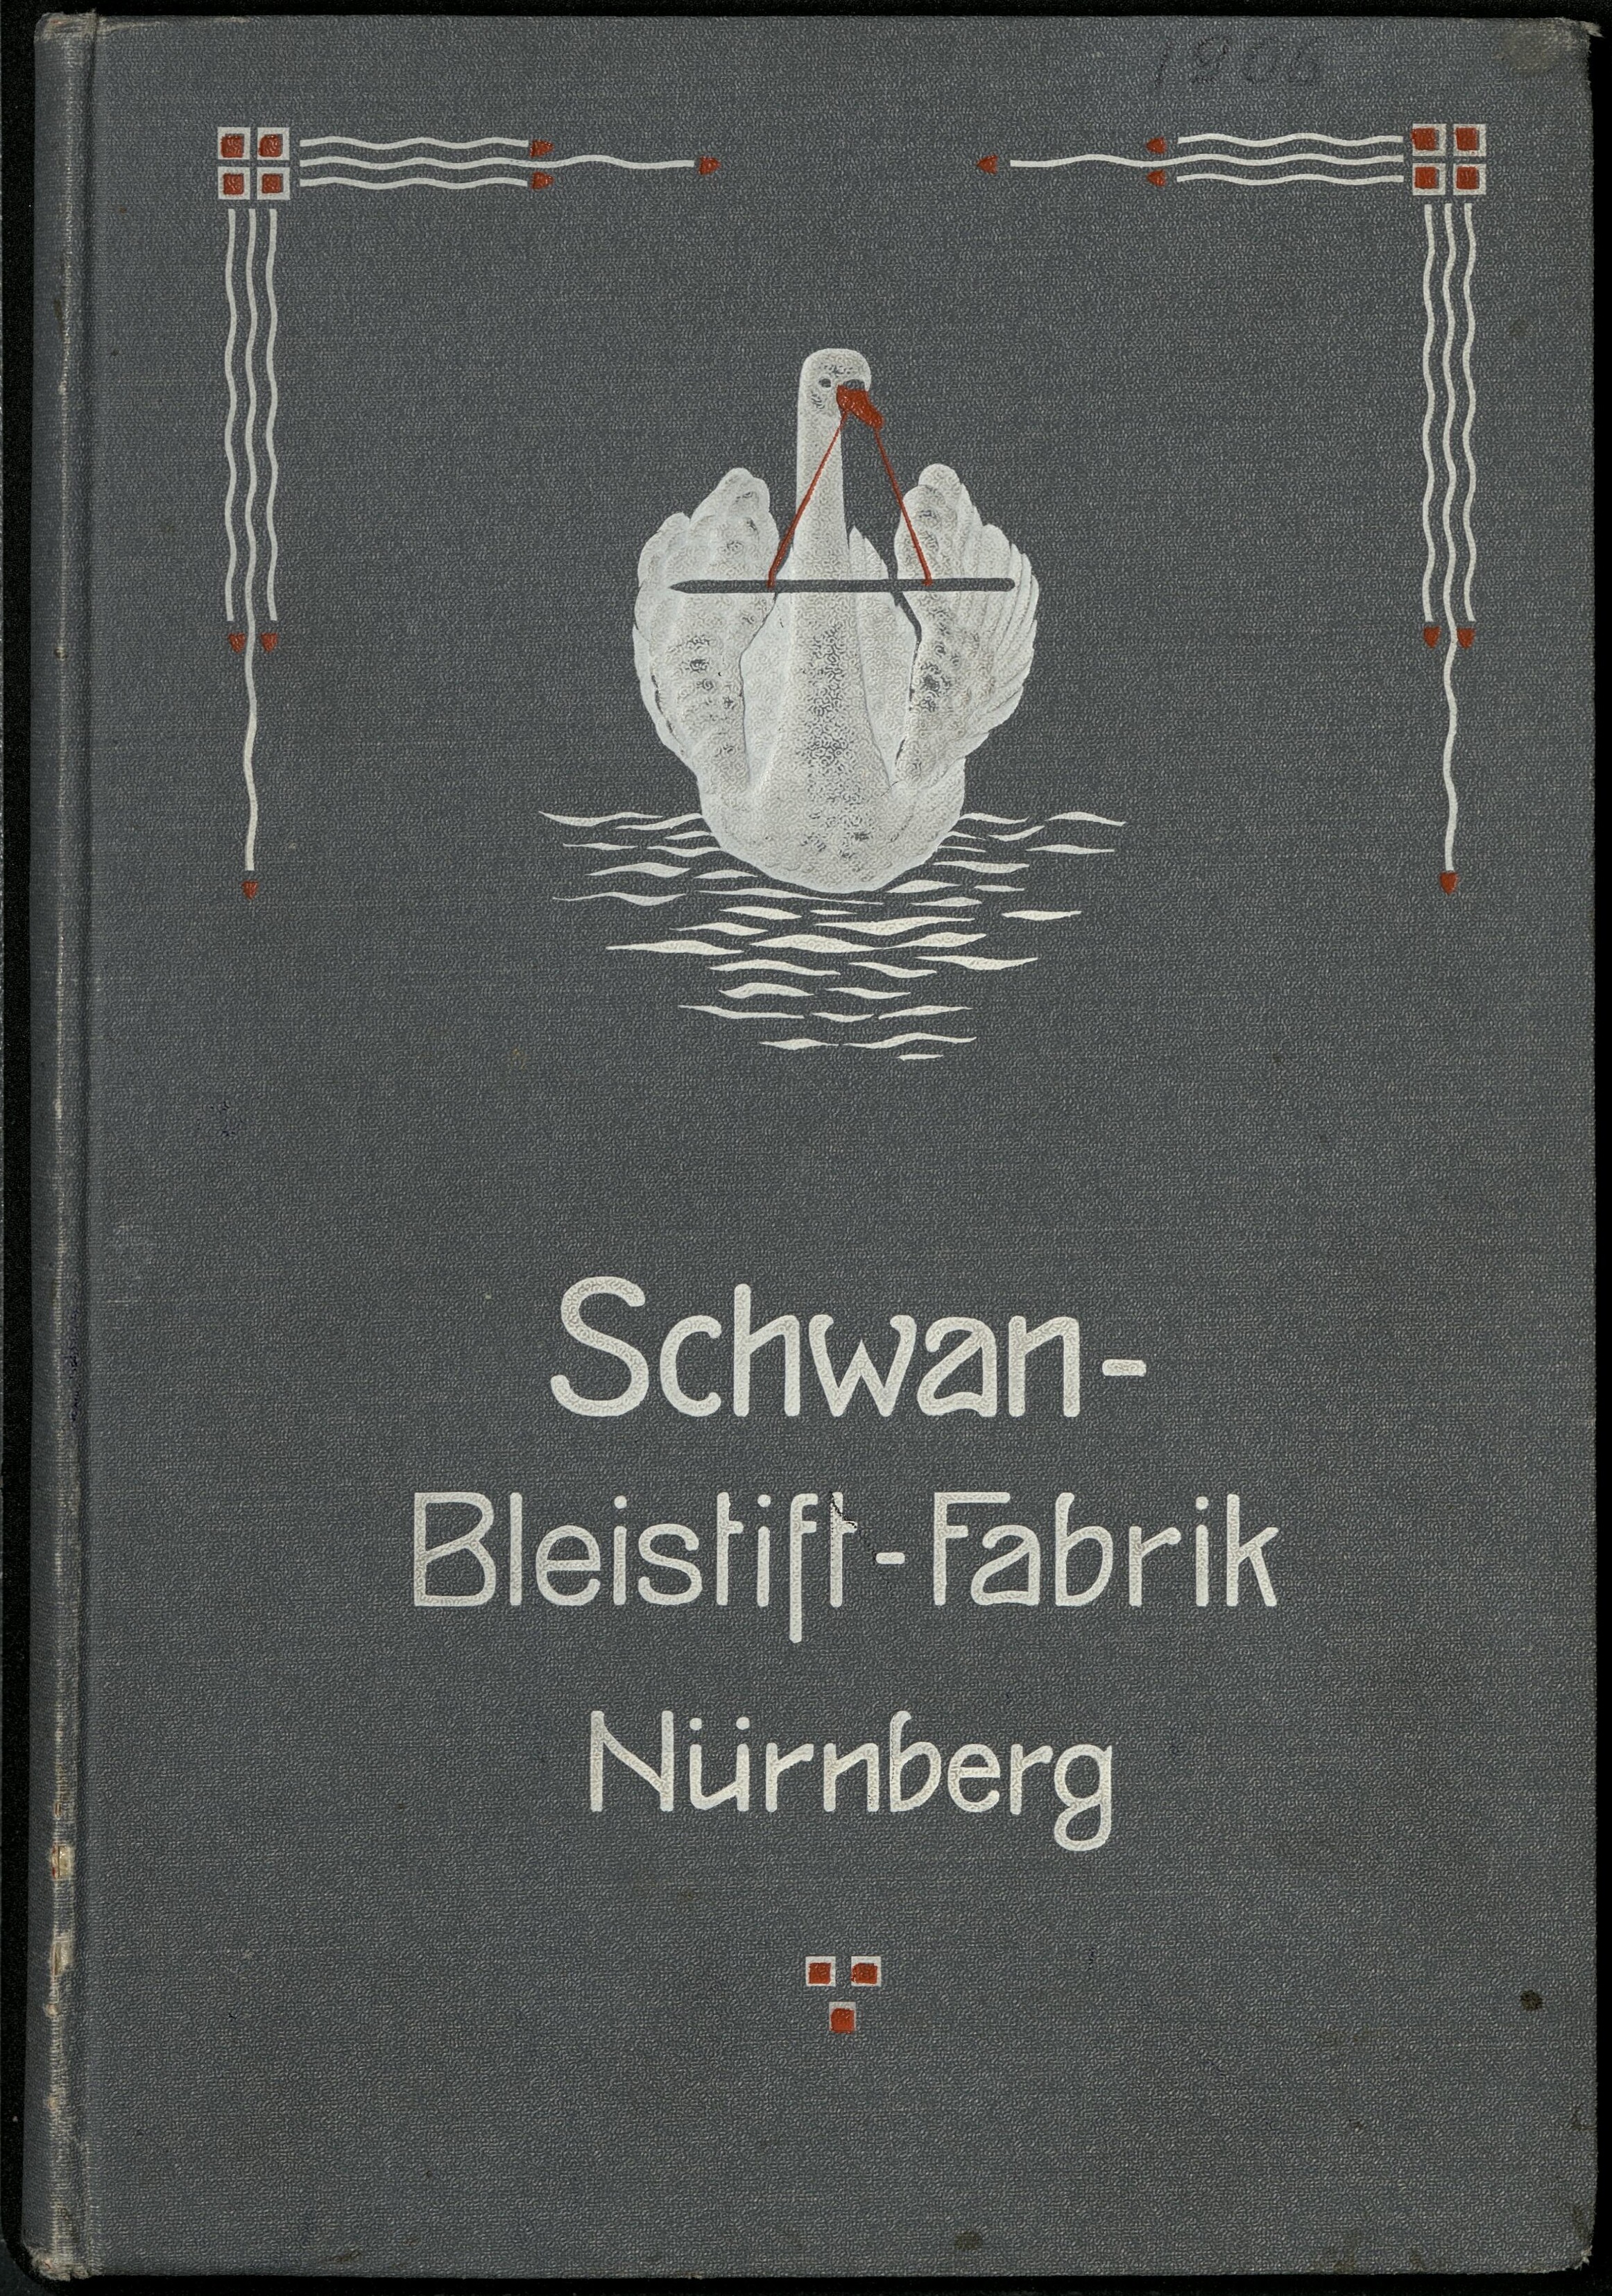 Preis-Liste der Schwan-Bleistift-Fabrik (Unternehmensarchiv der Firmengruppe Schwan-STABILO CC BY-NC-ND)